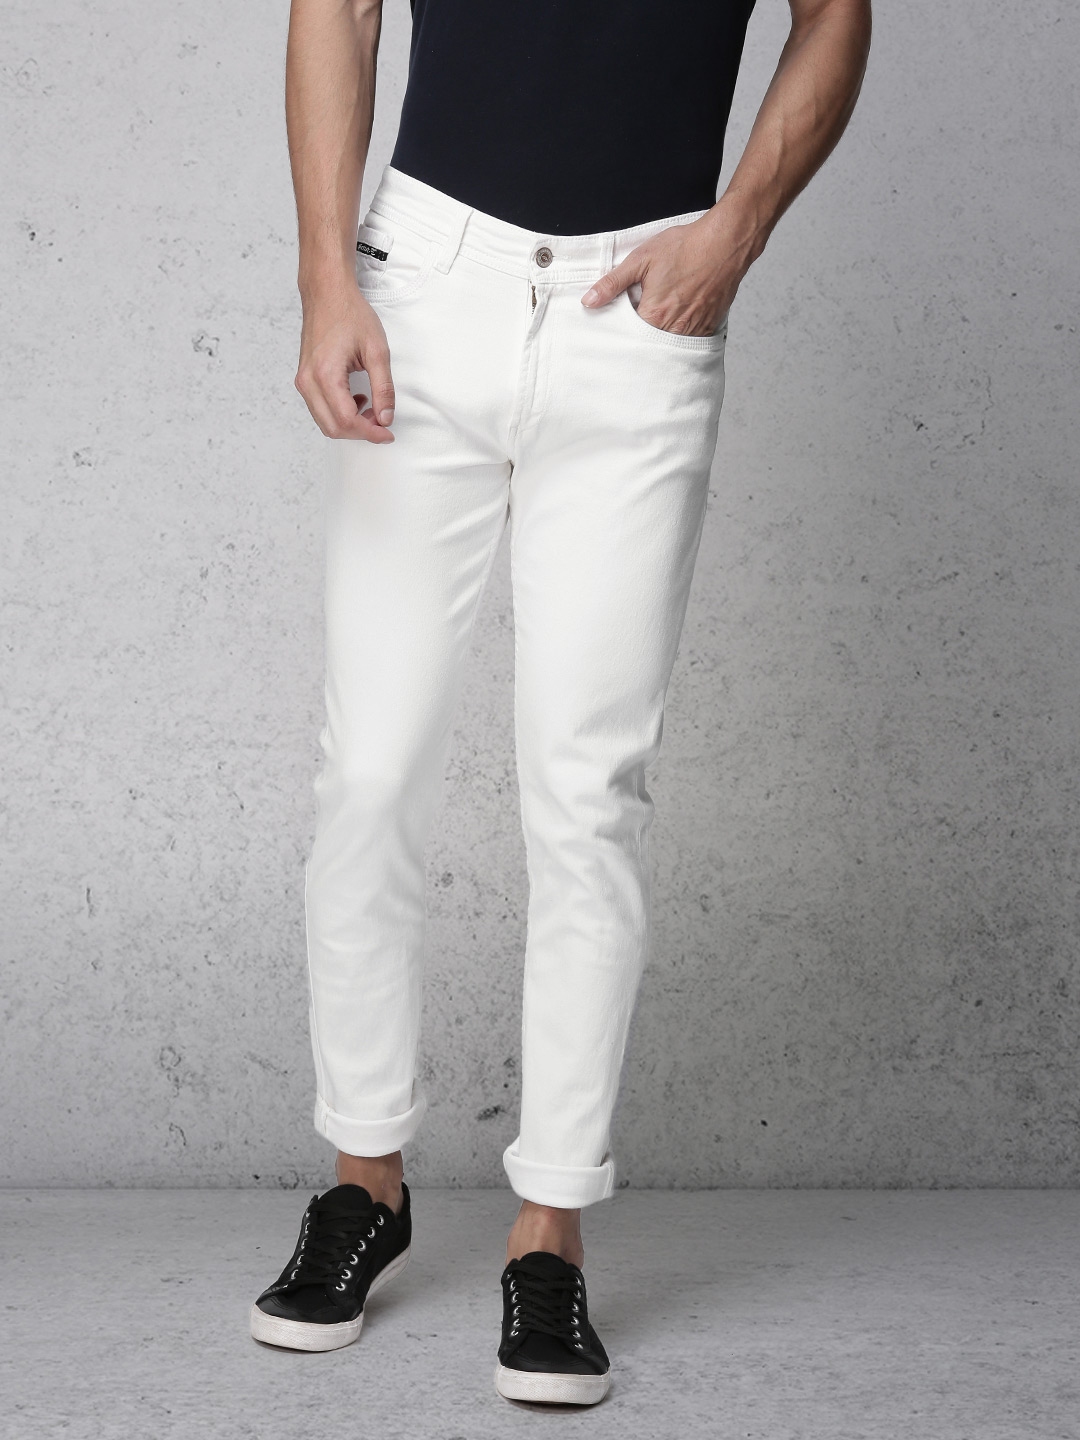 Buy Ecko Unltd Men White Super Slim Fit Mid Rise Clean Look Stretchable ...